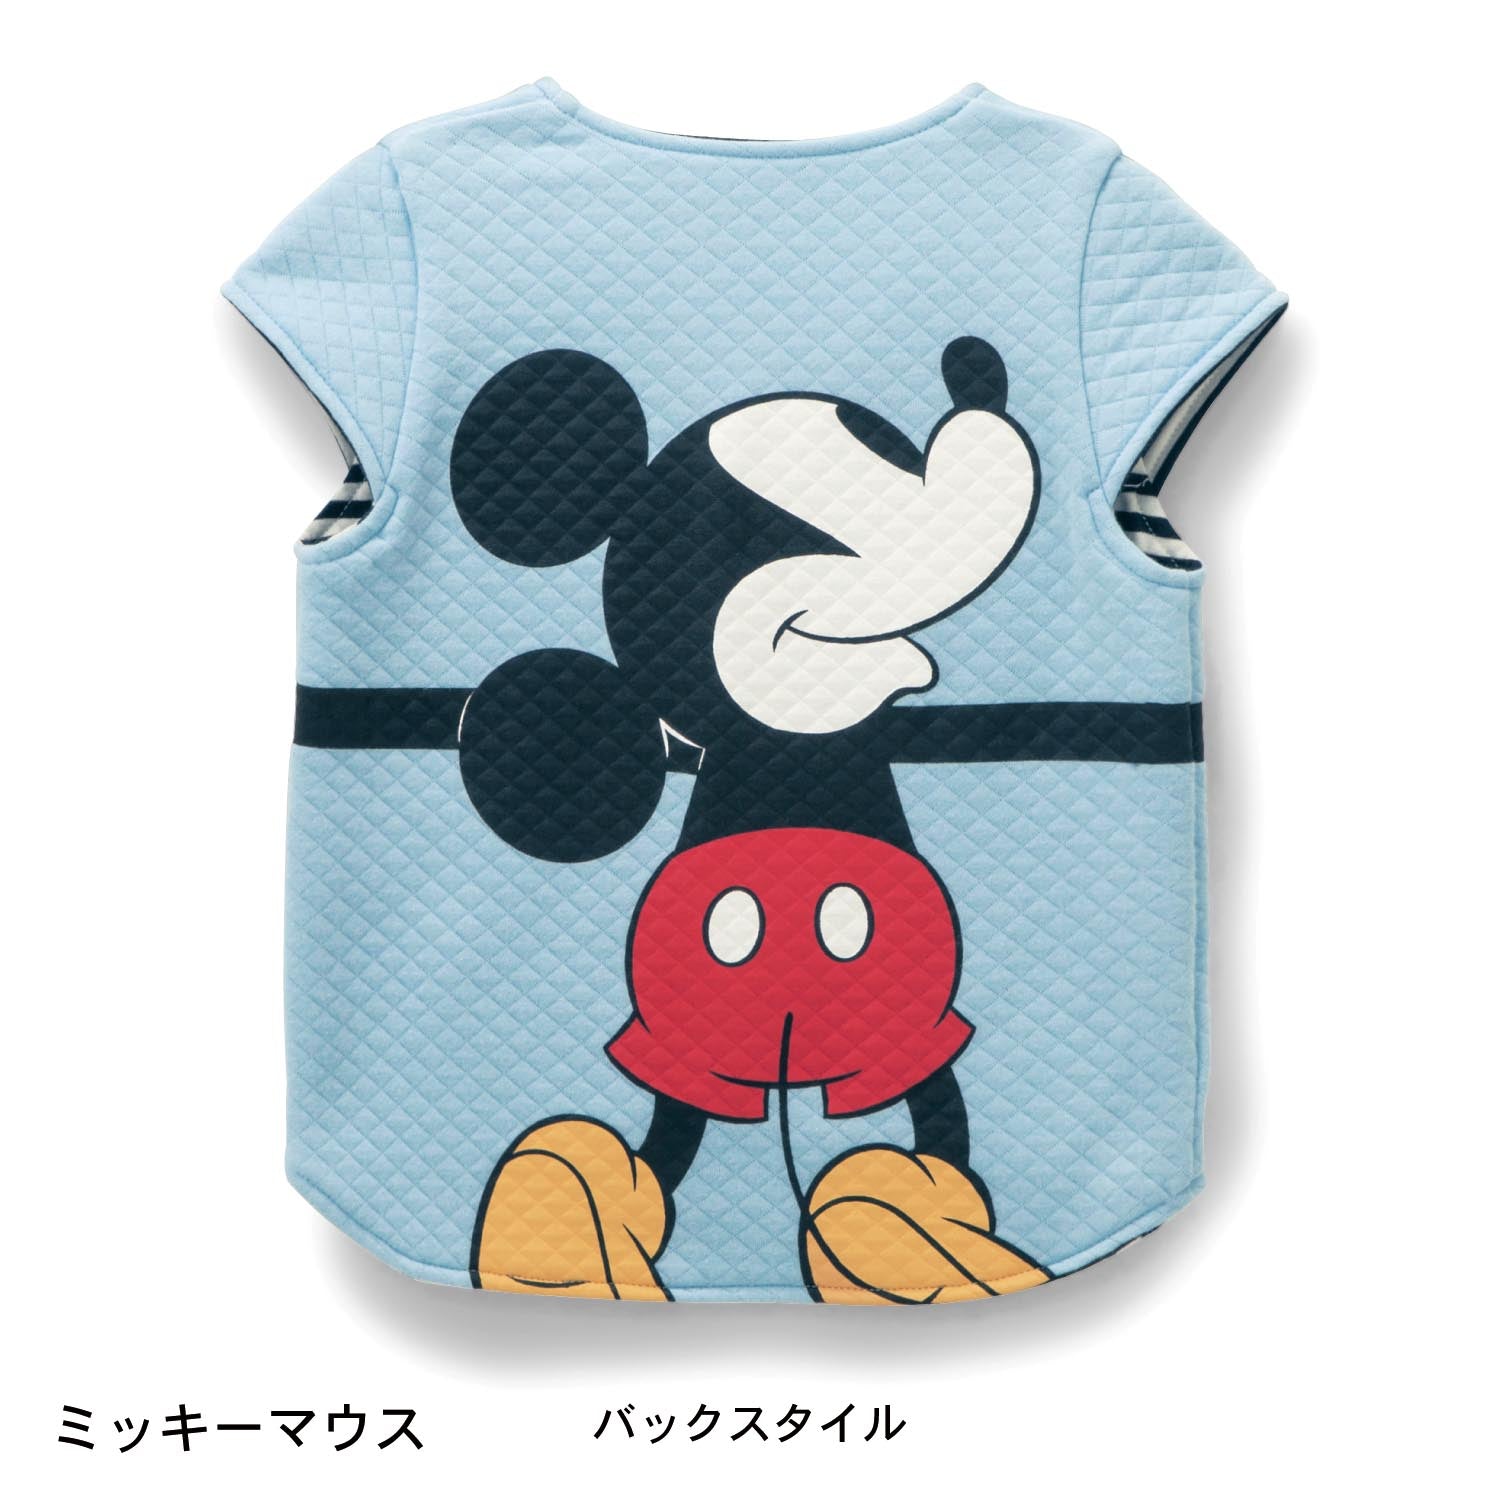 迪士尼卡通人物擁抱可愛針織棉背心 日本兒童服飾